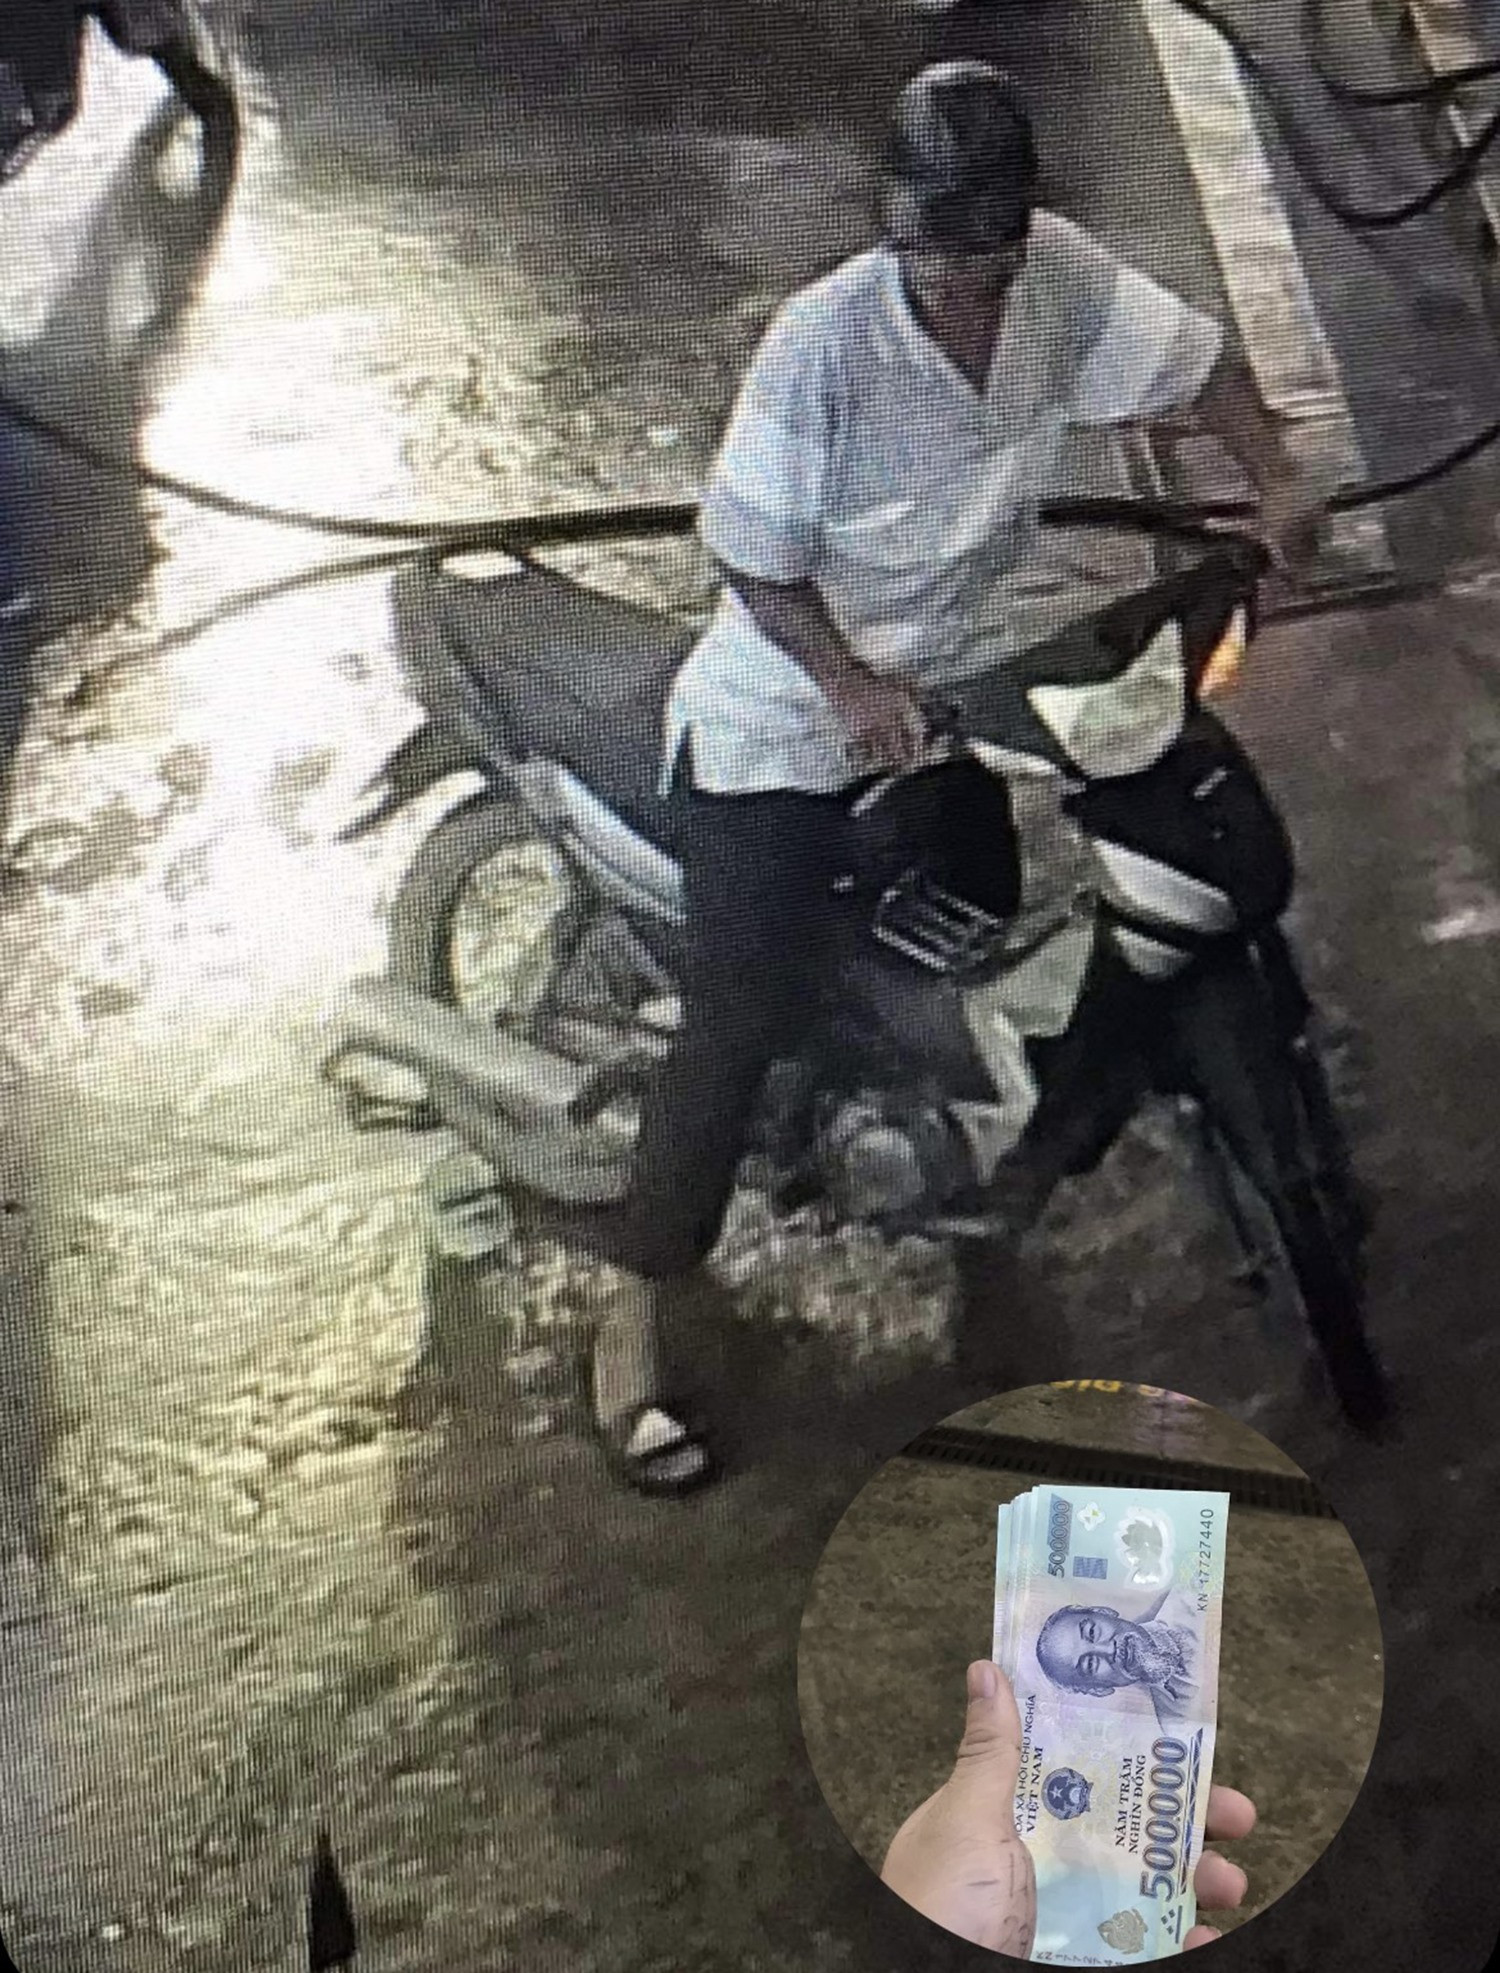 Người đàn ông được cho là đánh rơi sấp tiền mệnh giá 500 nghìn đồng tại cửa hàng xăng dầu Petrolimex (số 48 Phan Châu Trinh, Tam Kỳ). Ảnh: Trích xuất camera.